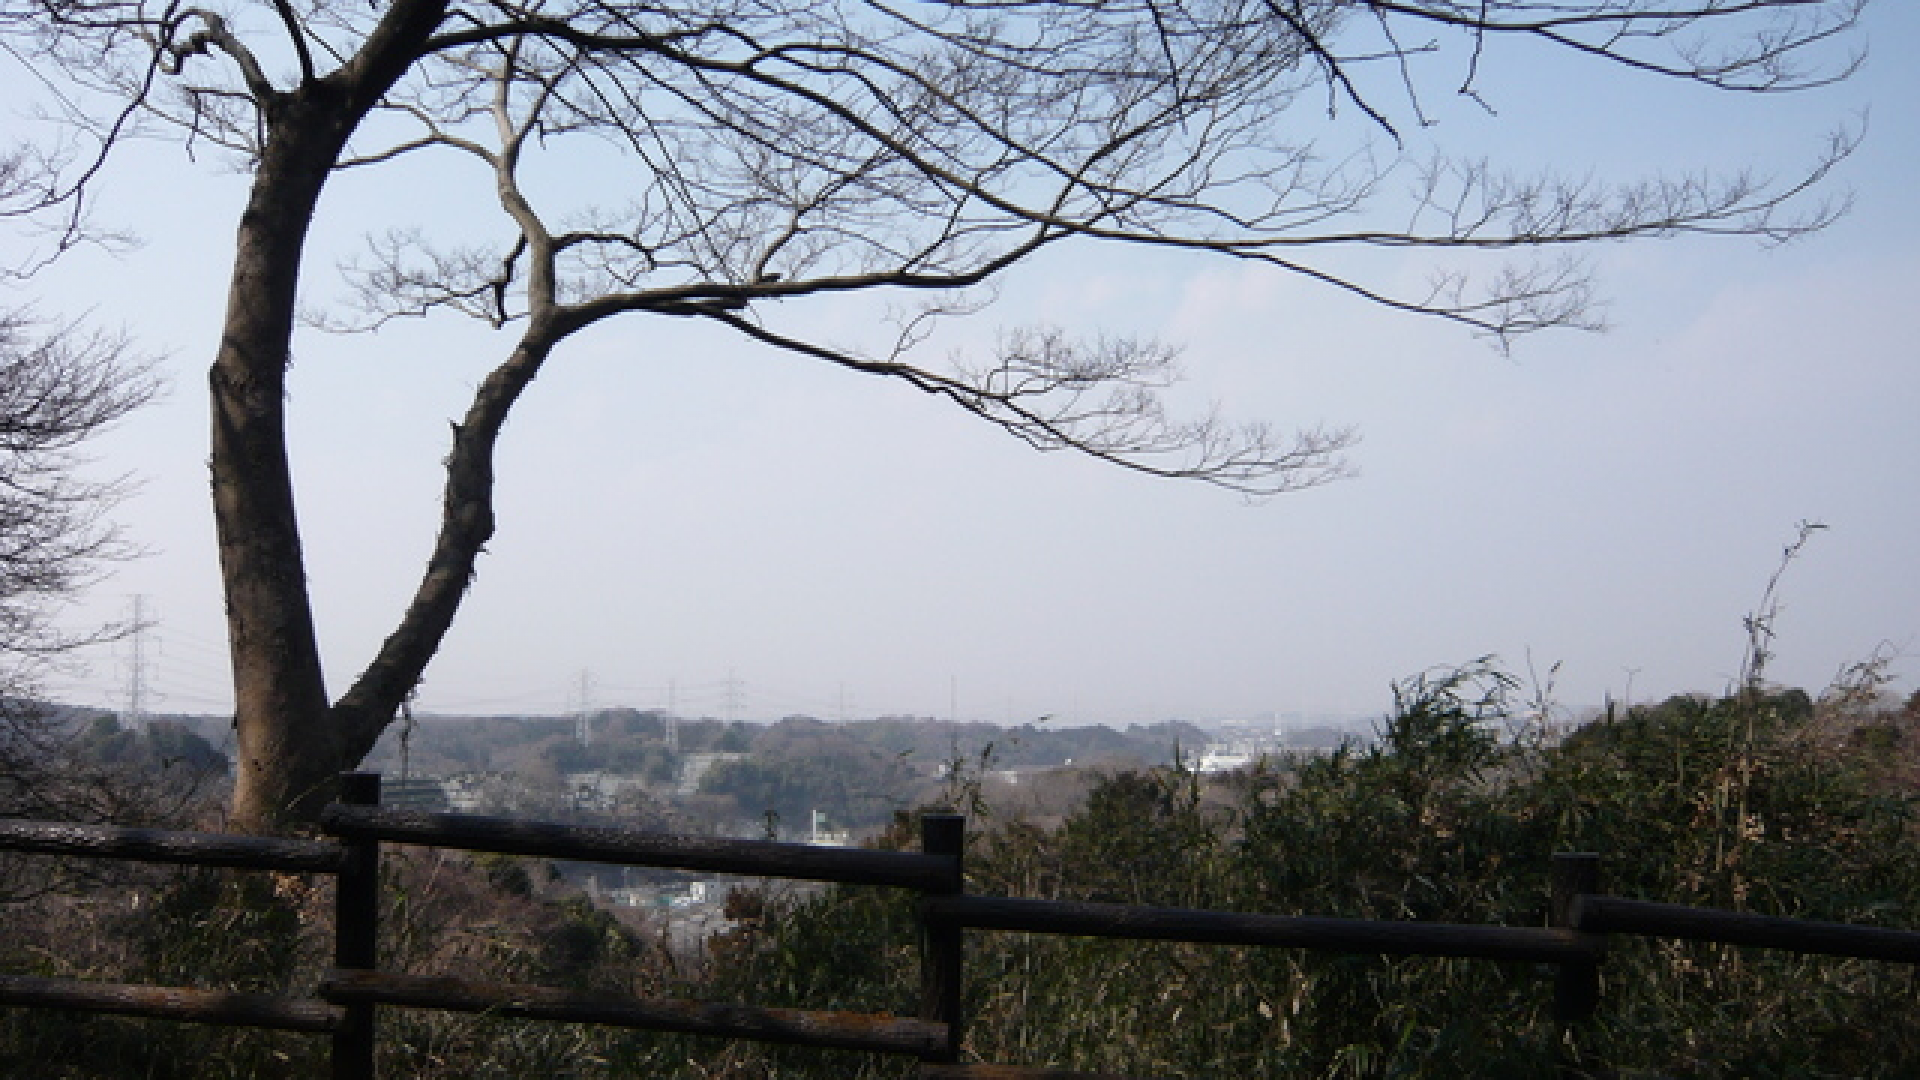 Shizakai Park